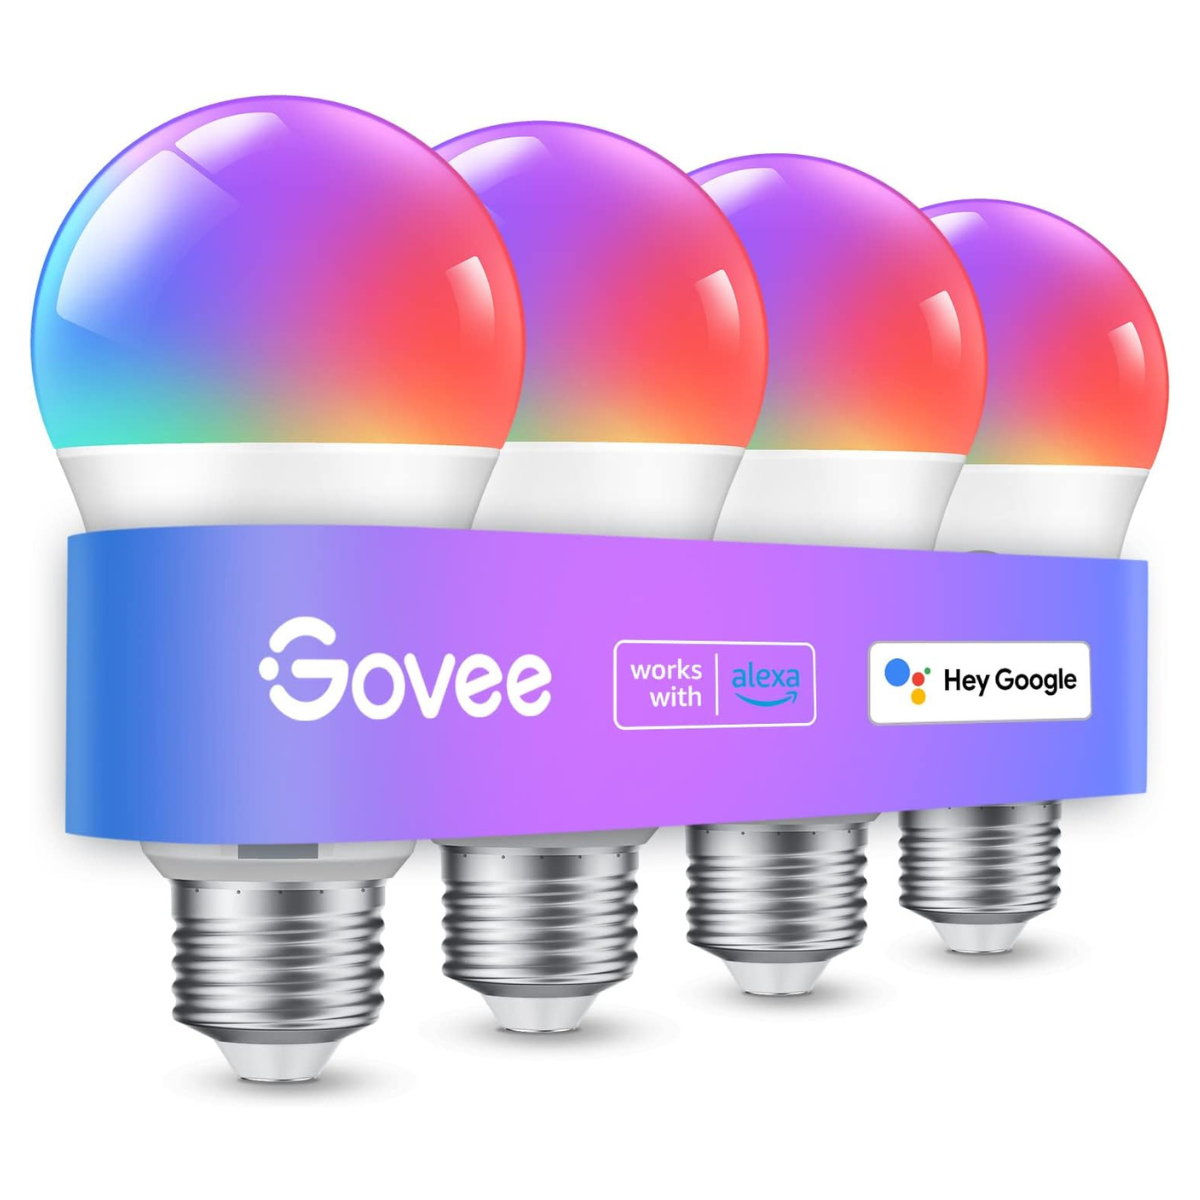 The Govee Smart Light Bulbs 